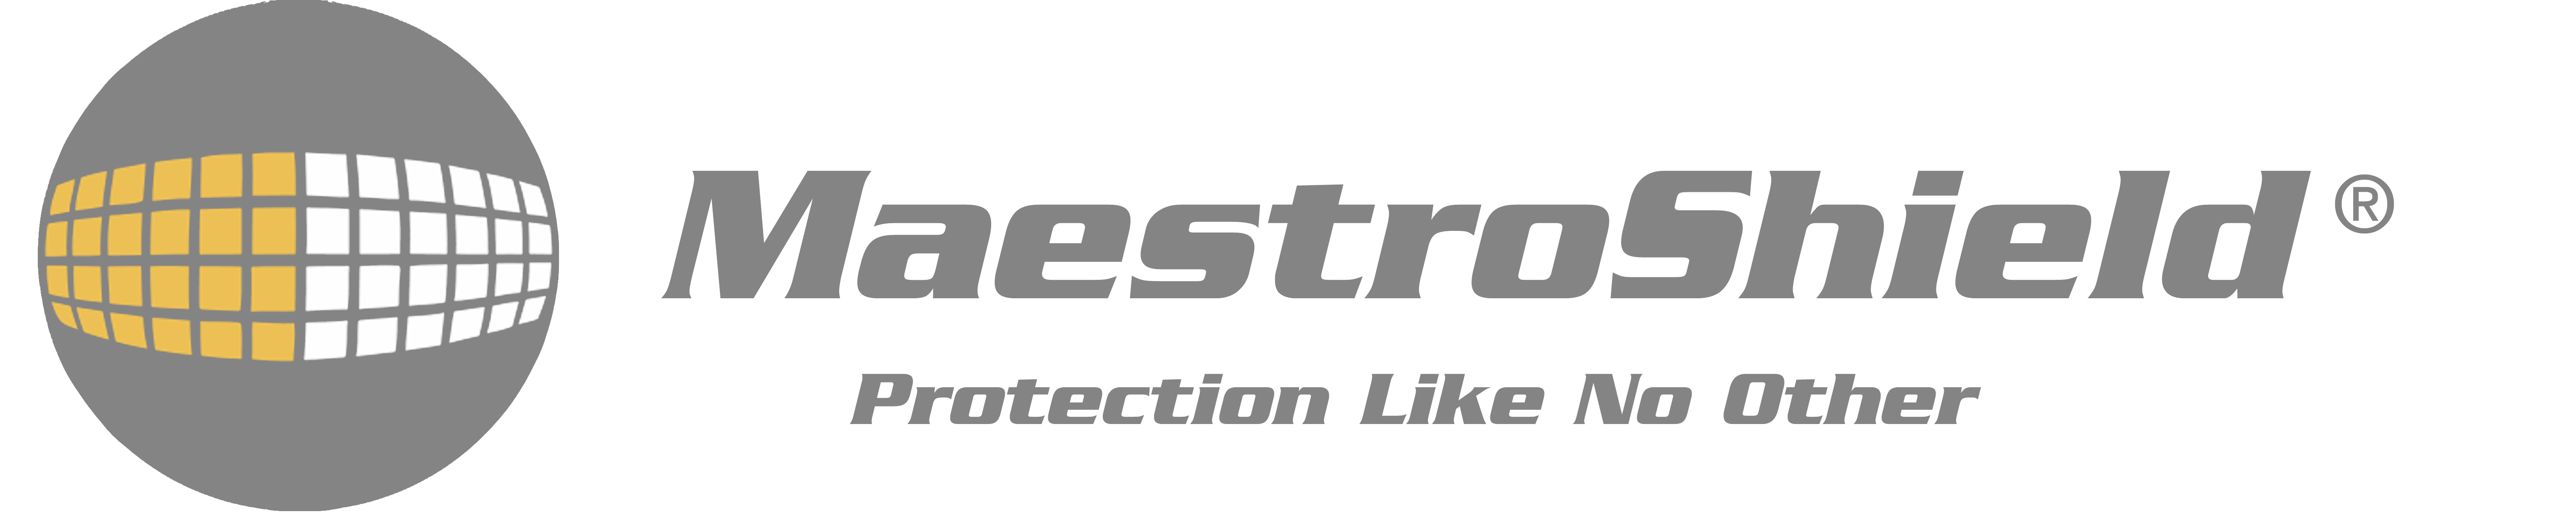 MaestroSheild logo.